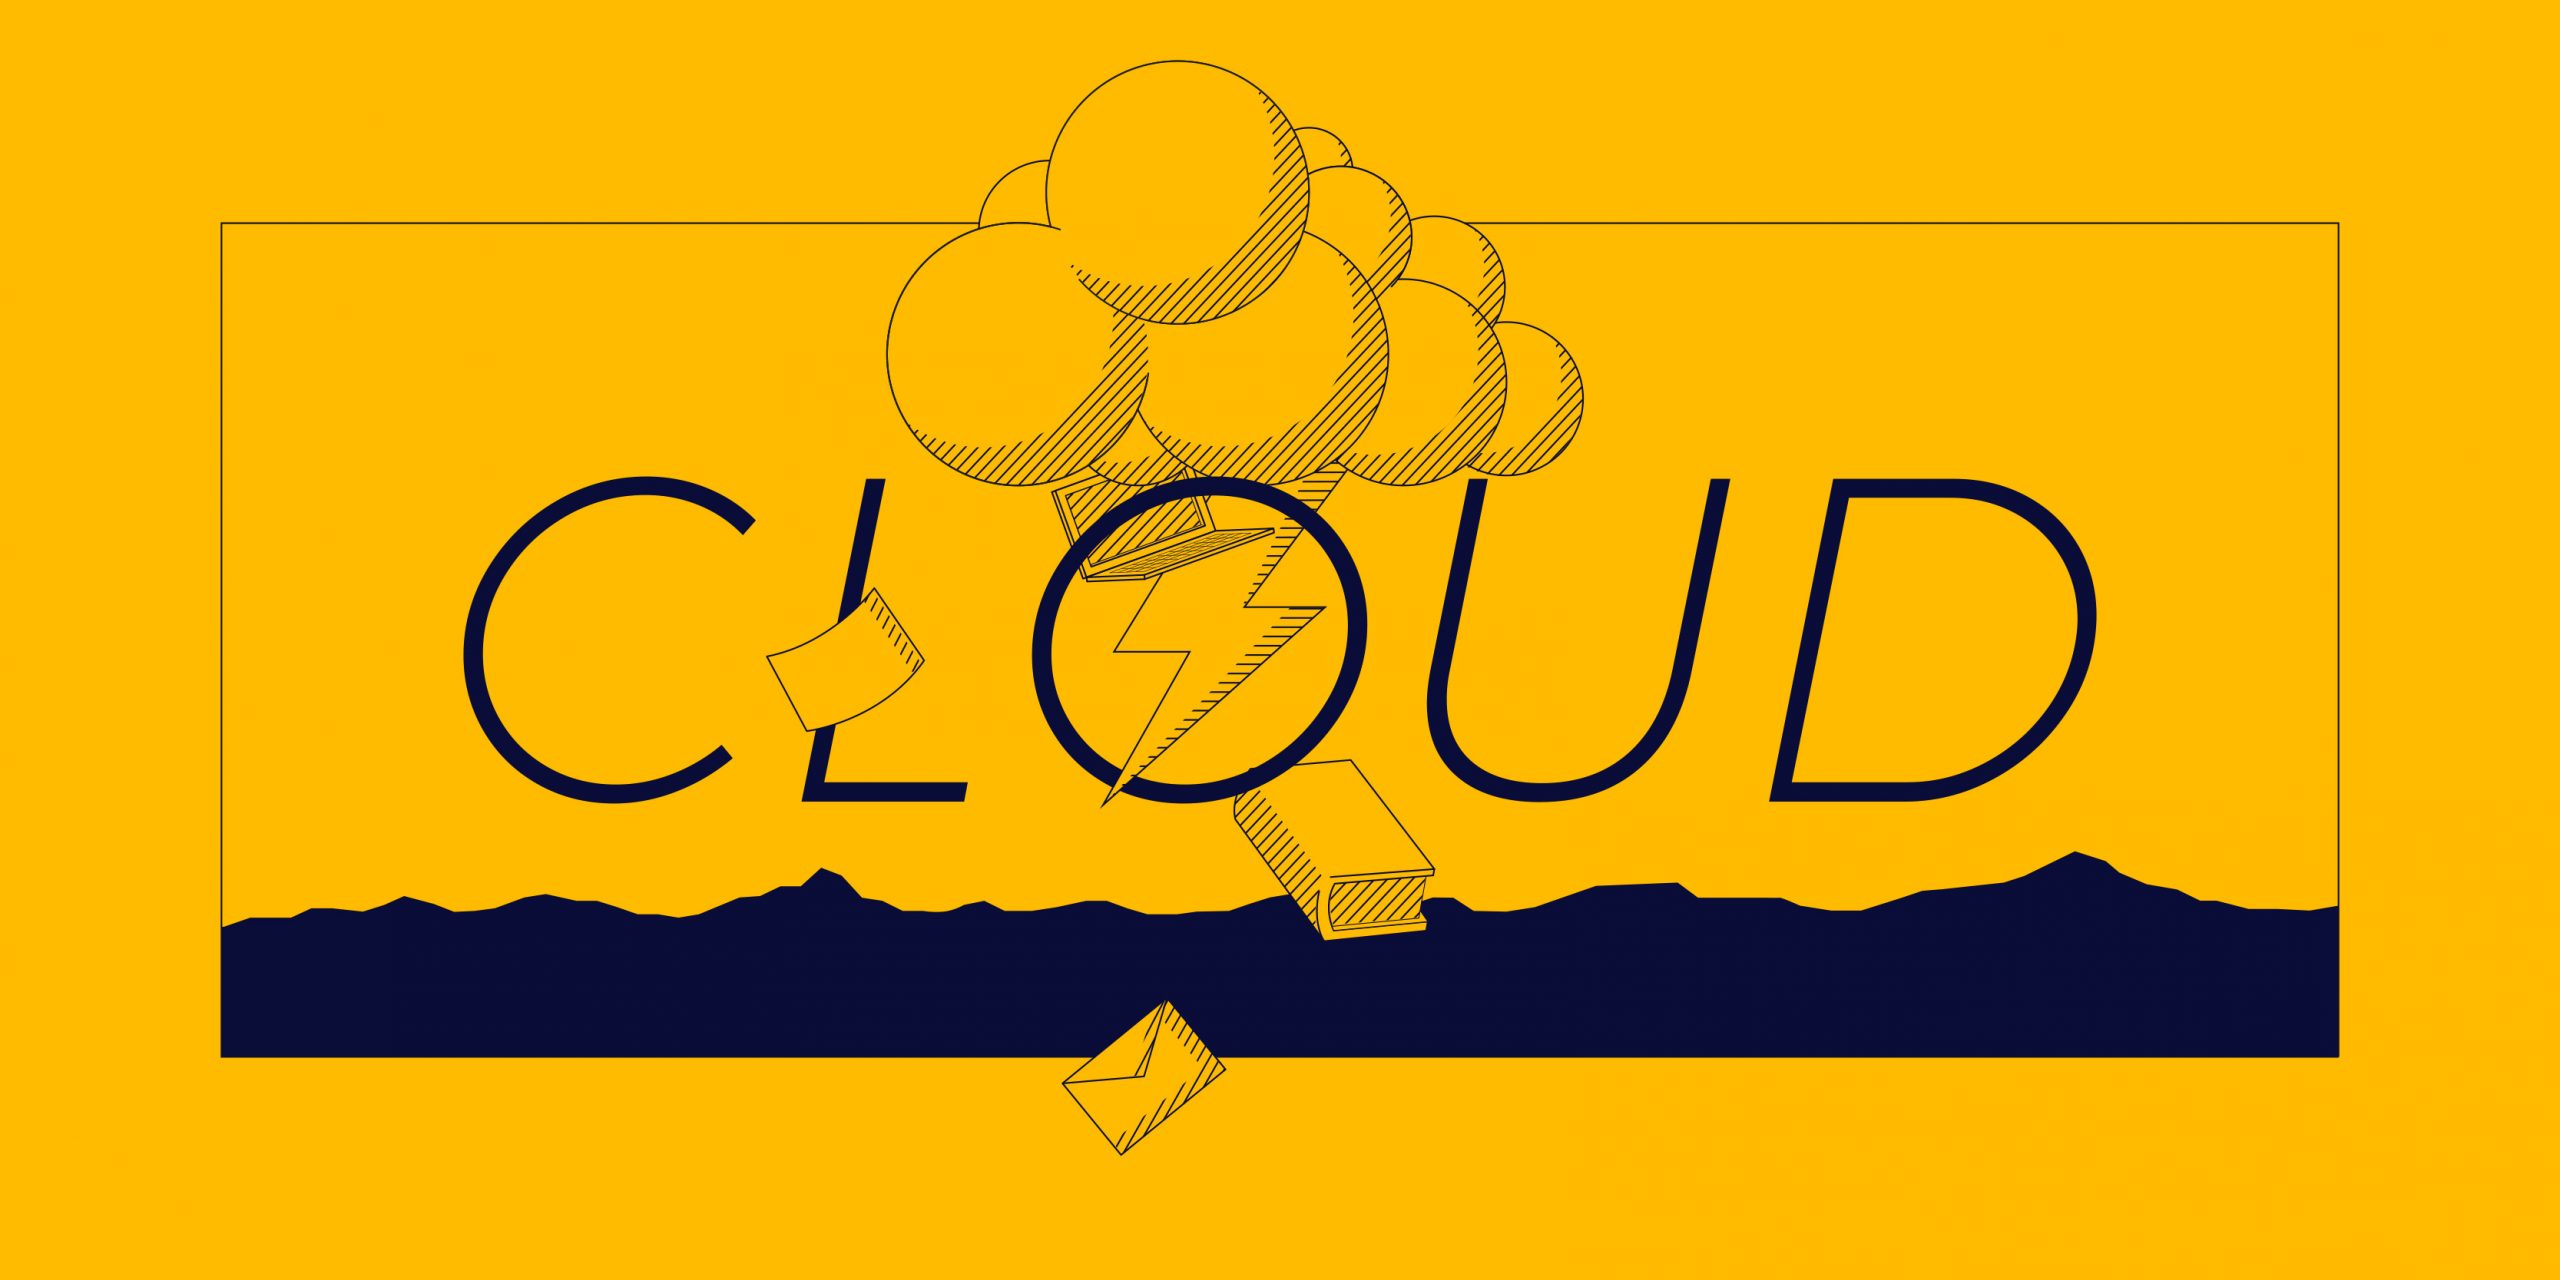 Les serveurs Cloud Gandi en 2020 : même vision mais de nouvelles ambitions